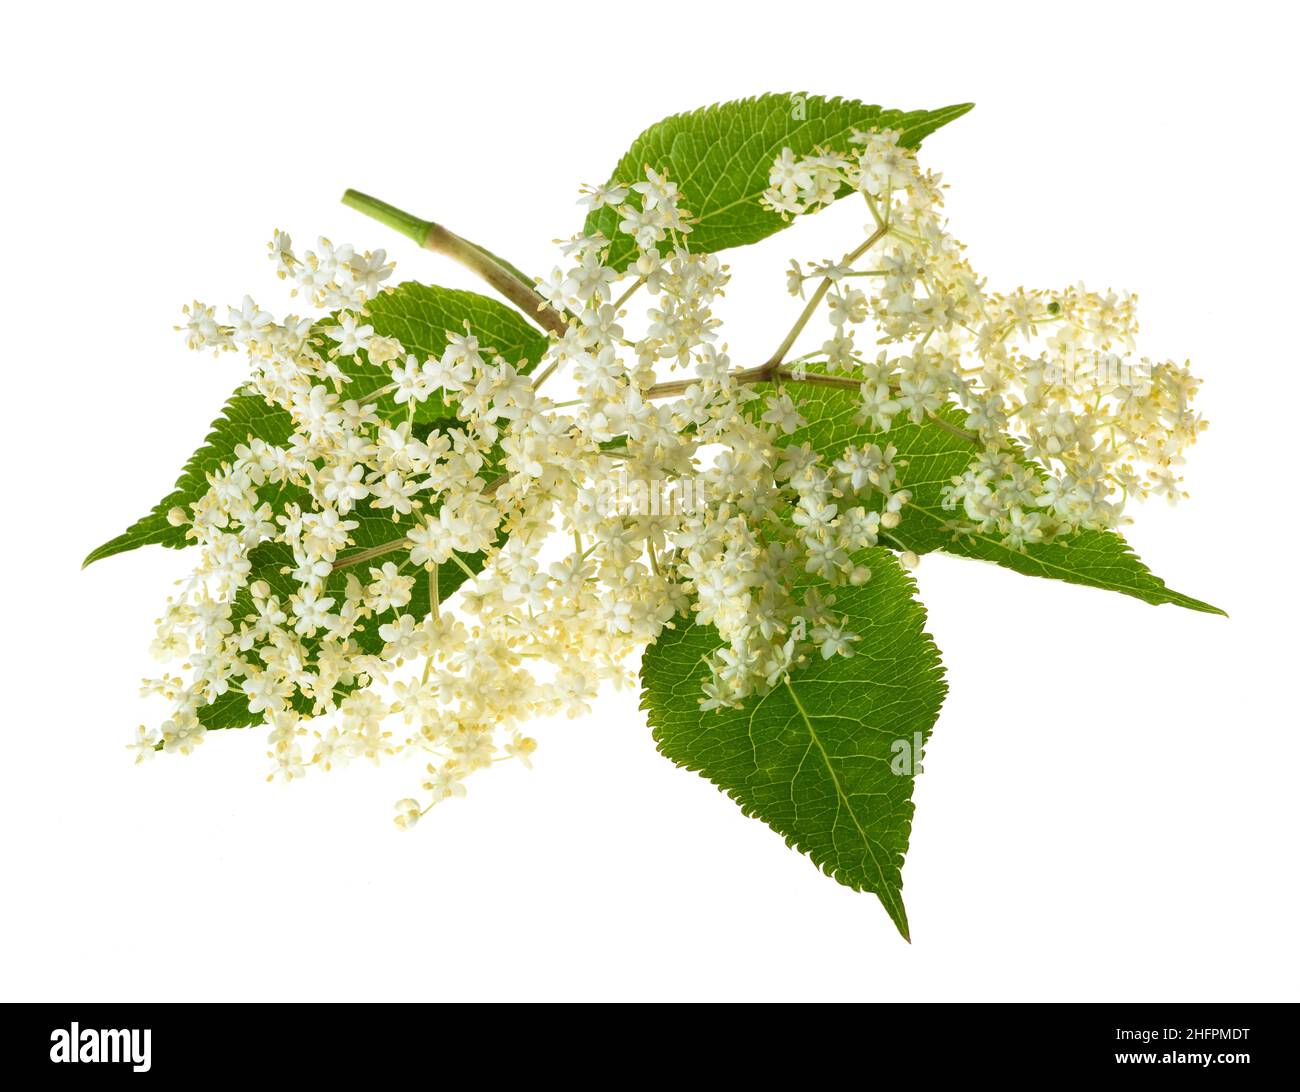 Holunderbeerzweig mit Blumen auf weißem Hintergrund Stockfoto